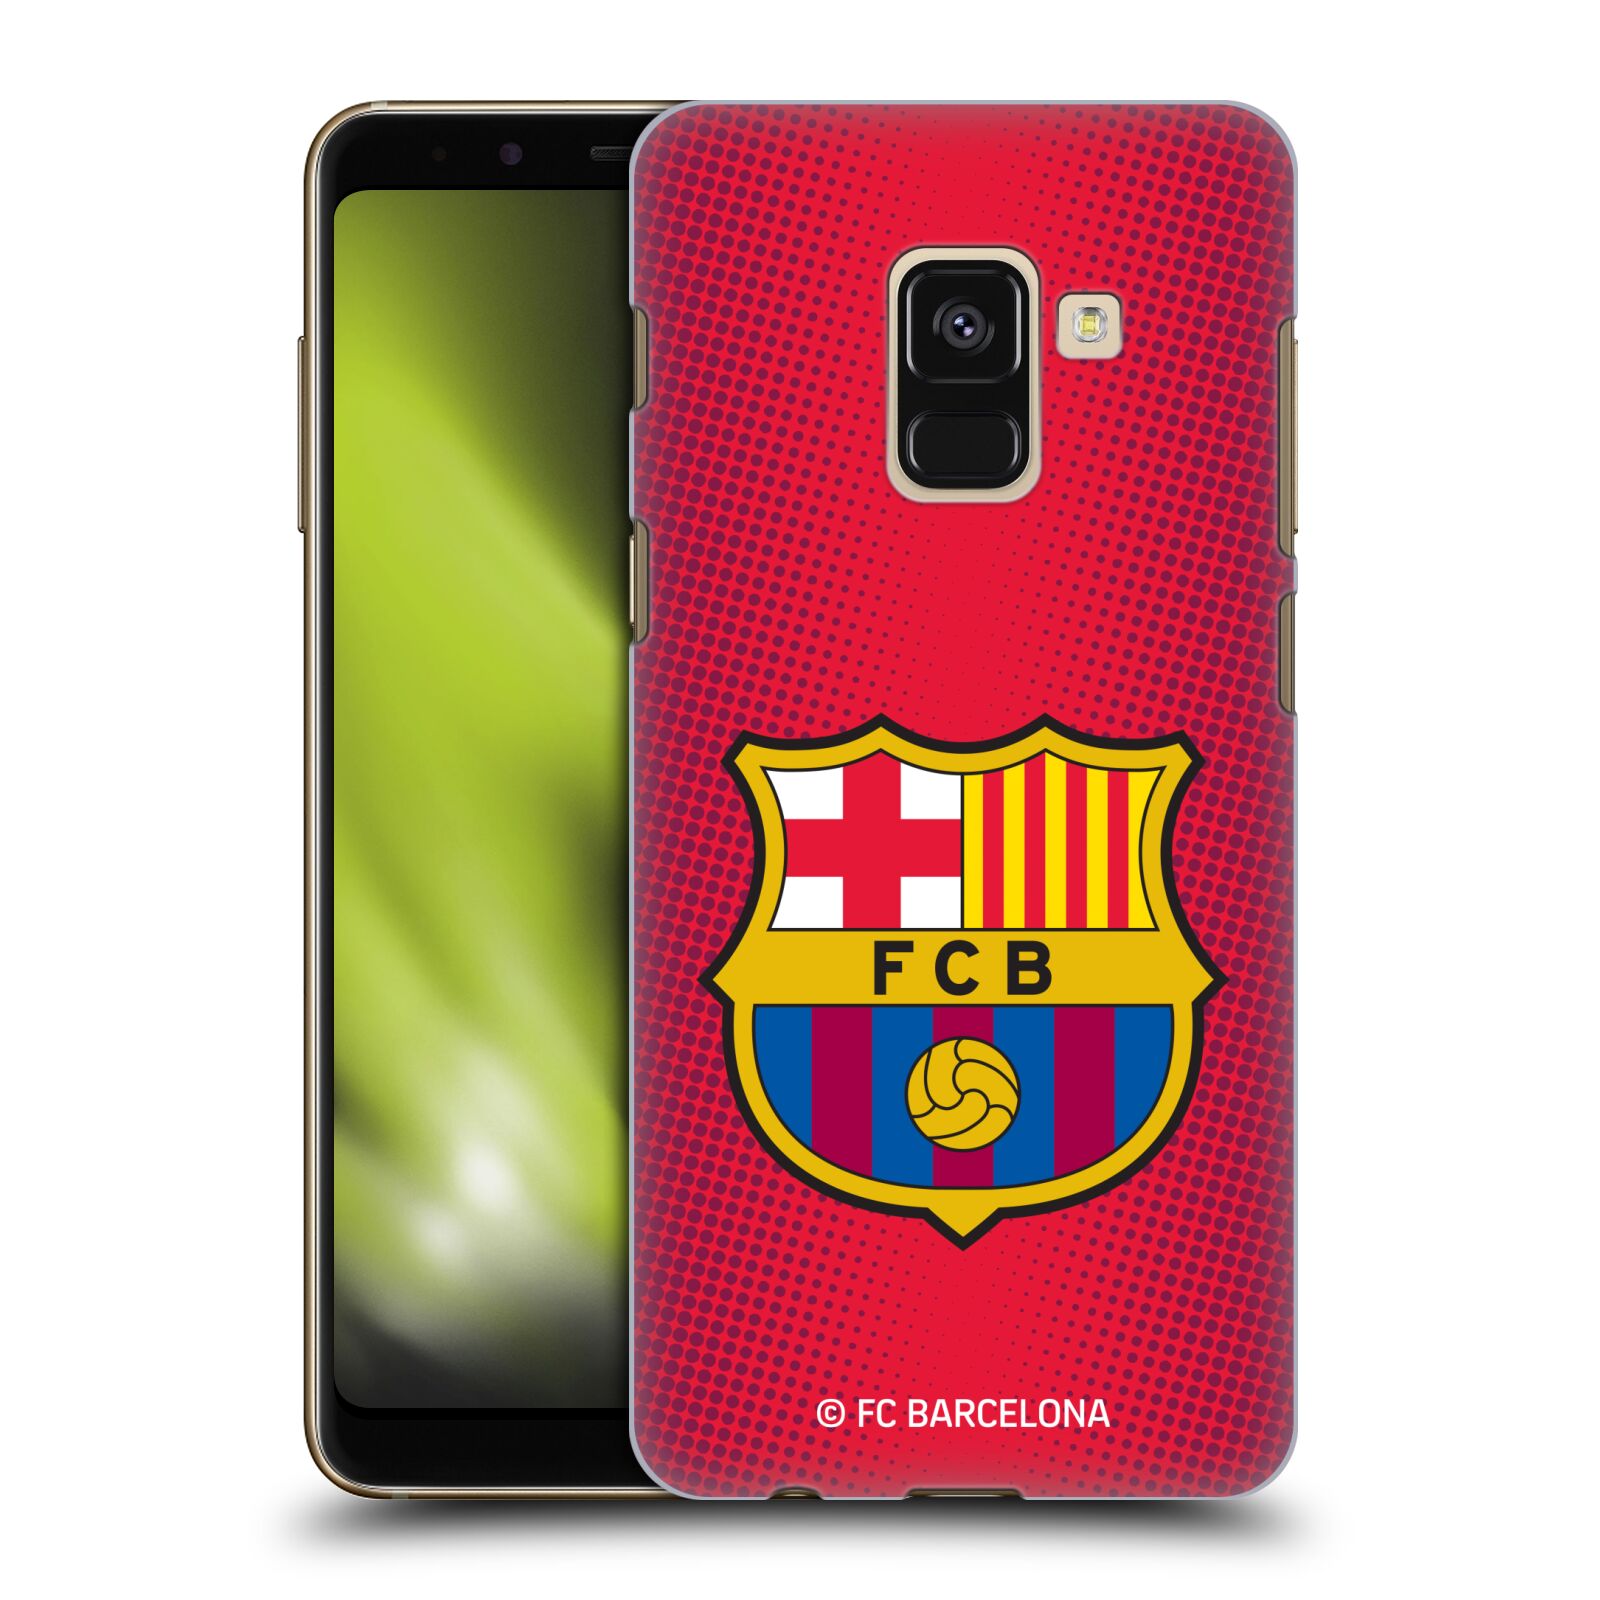 Obal na mobil Samsung Galaxy A8+ 2018, A8 PLUS 2018 - HEAD CASE - FC BARCELONA - Velký znak červená a modrá